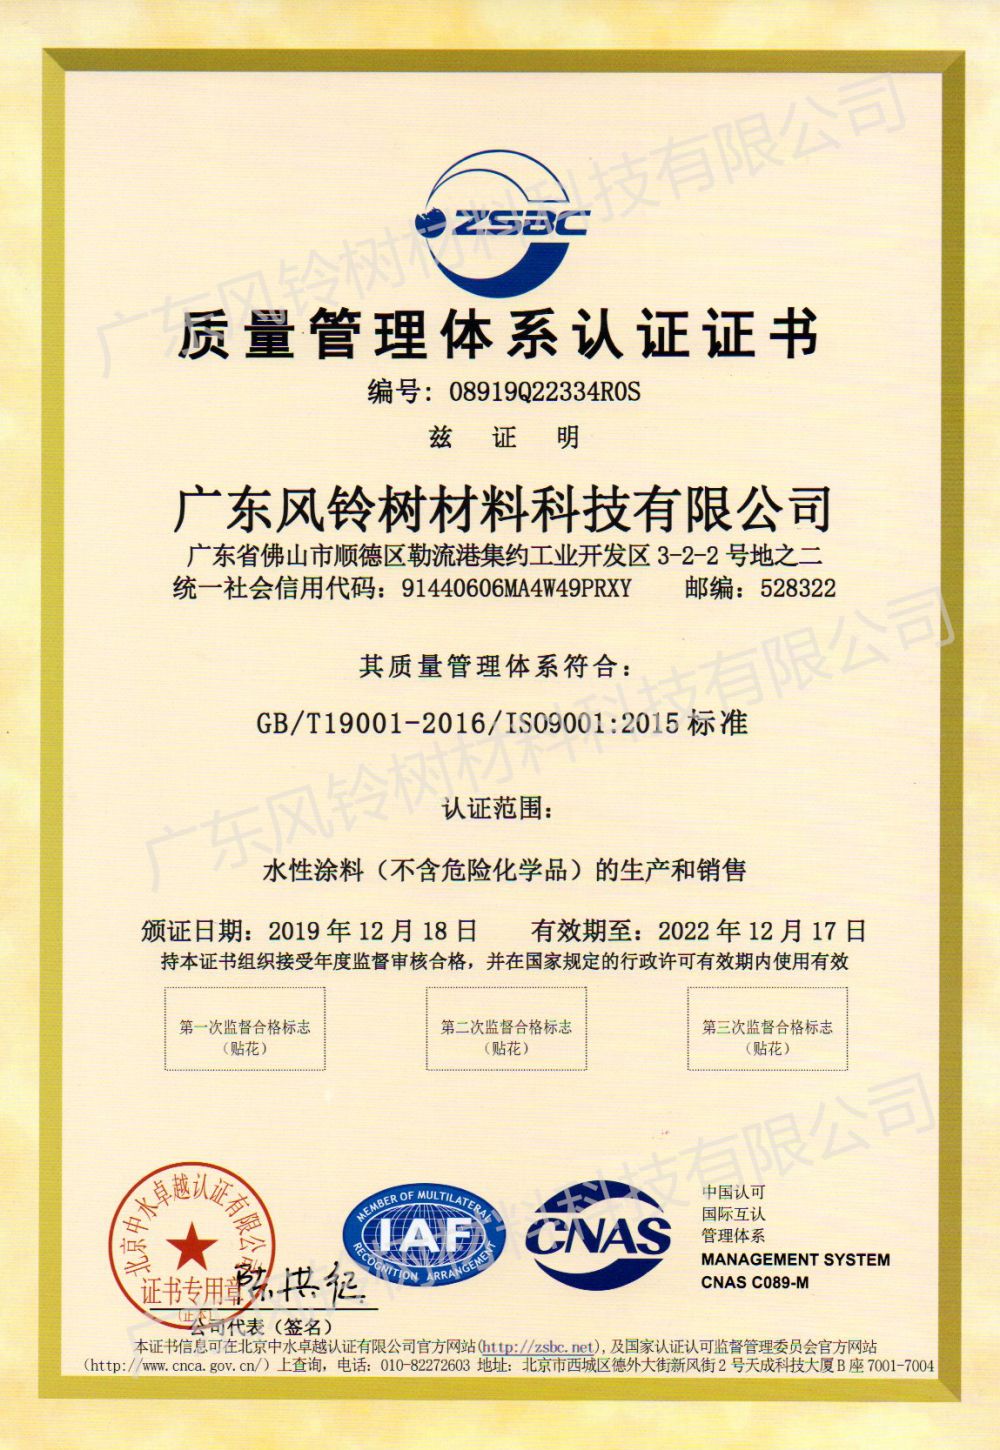 ISO90012015 ການຢັ້ງຢືນລະບົບການຄຸ້ມຄອງຄຸນນະພາບ